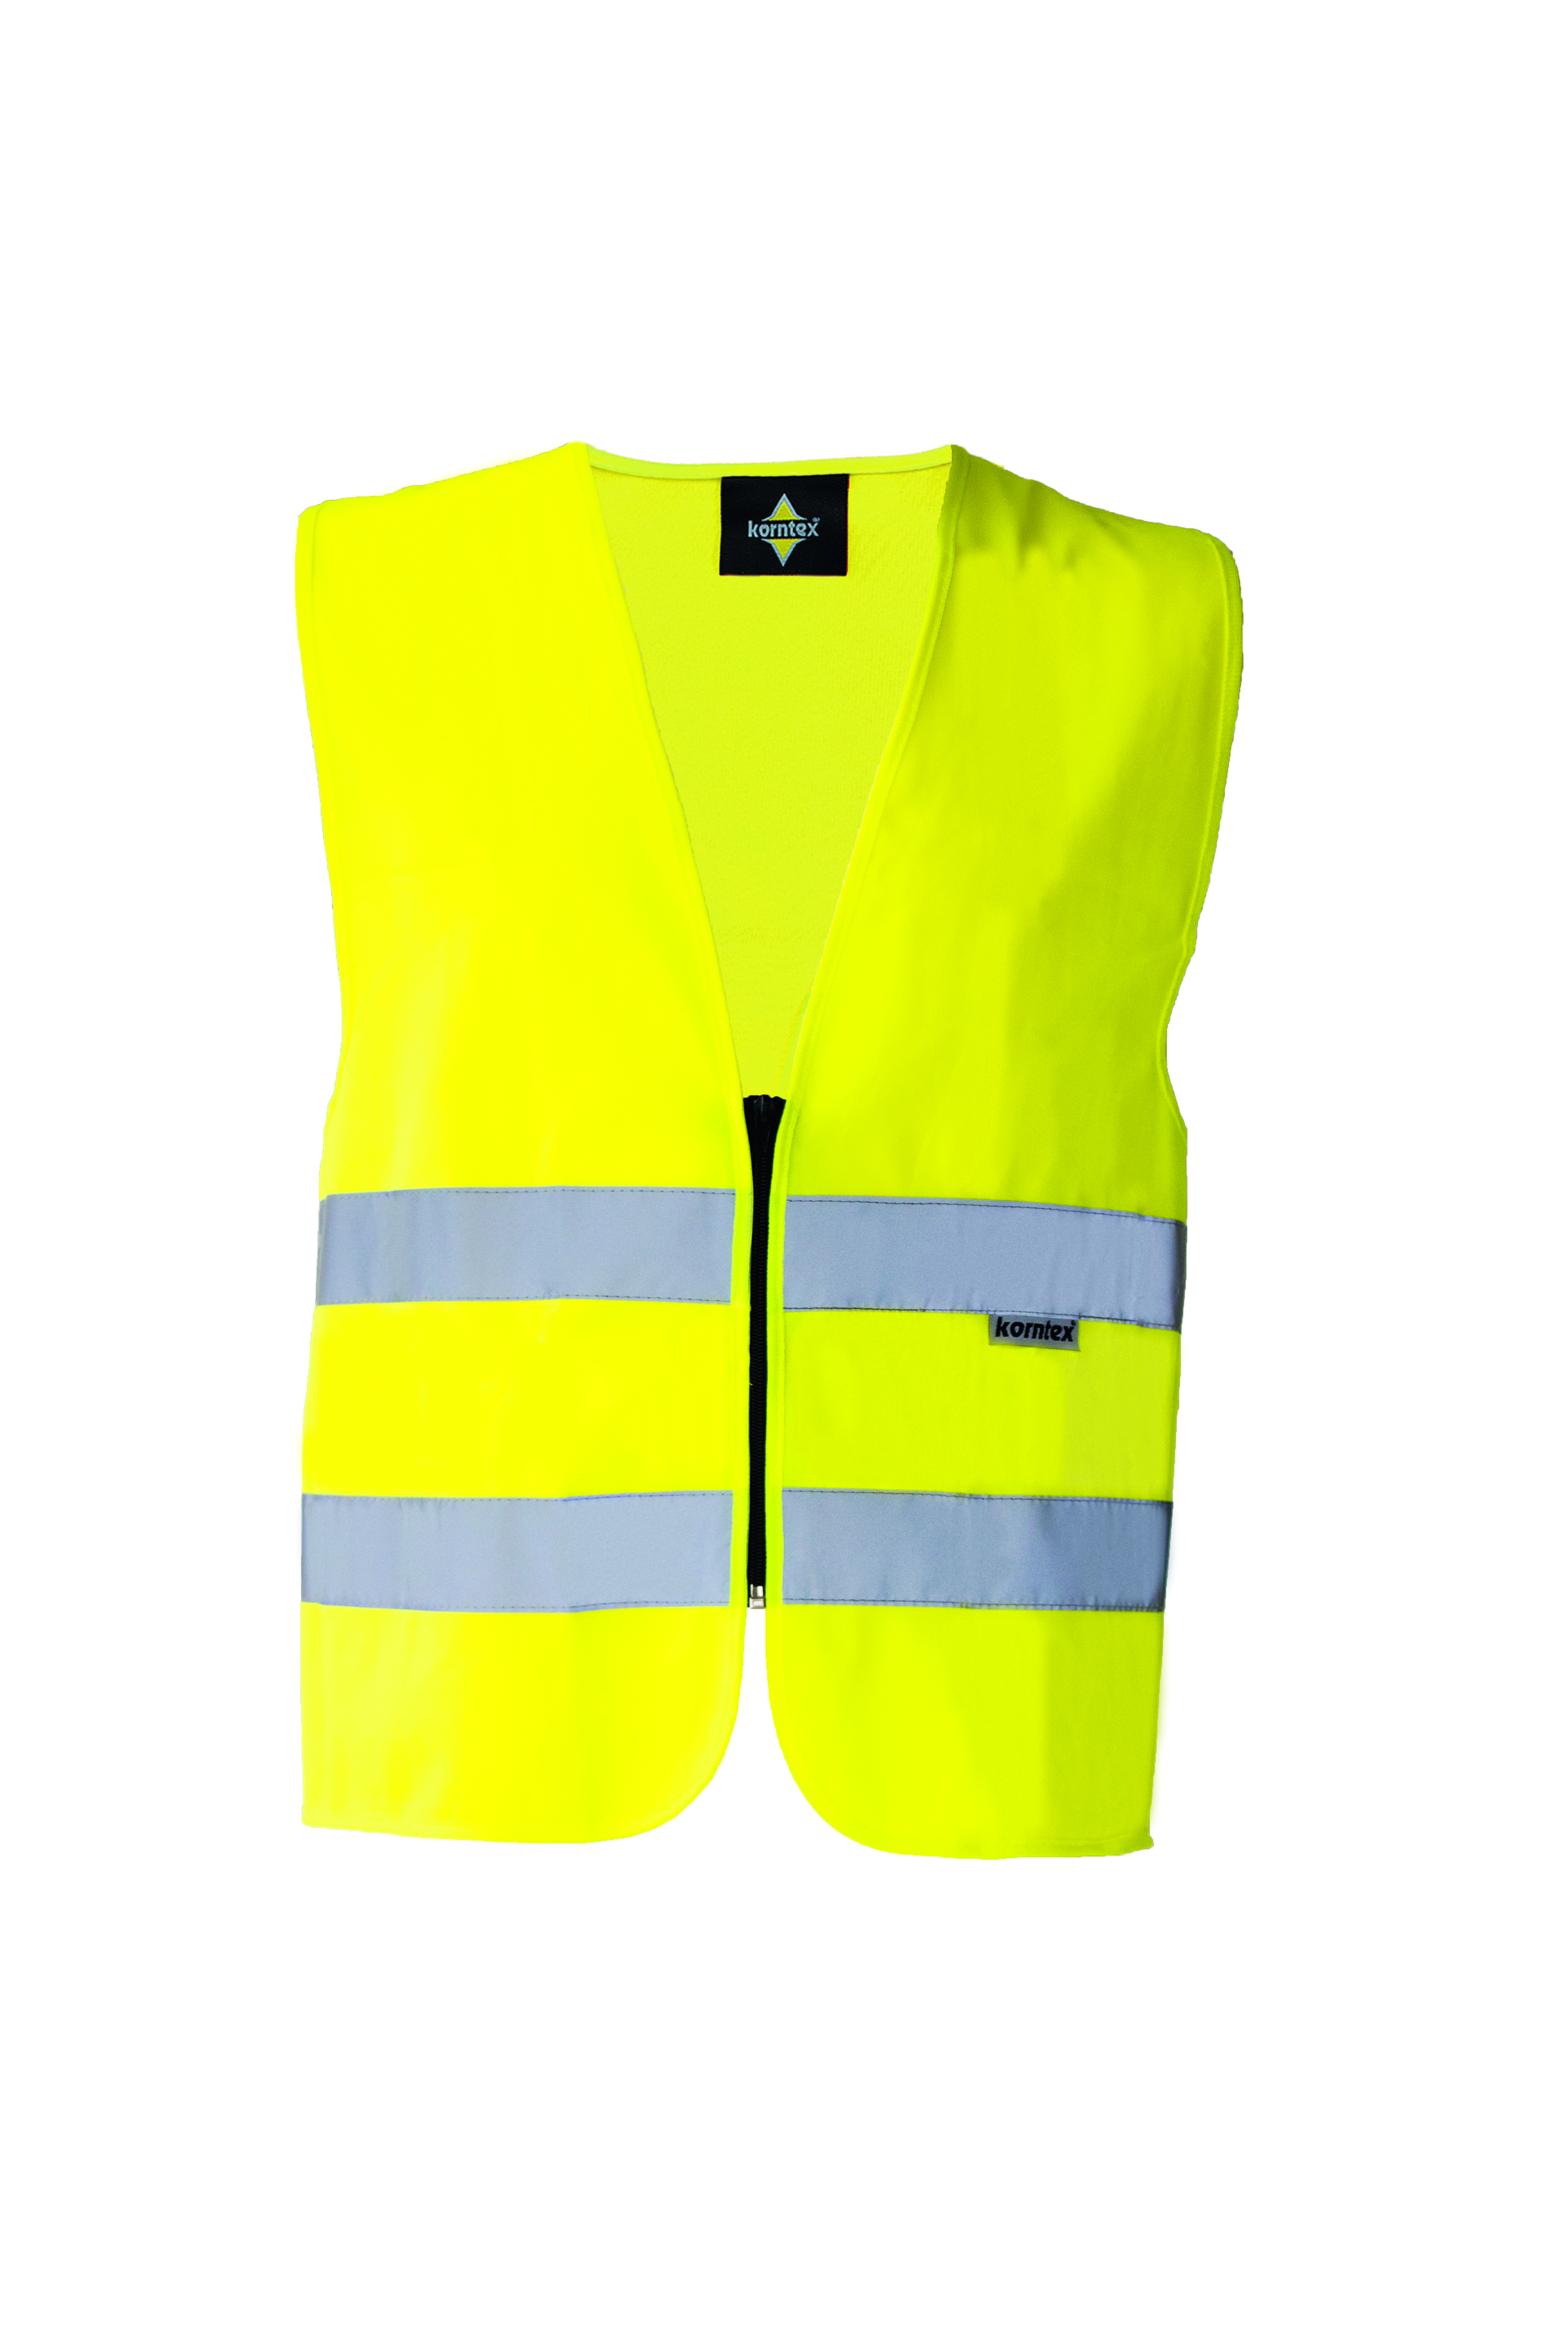 Vesta Korntex Hi-Vis Safety Vest Cologne With Front Zipper